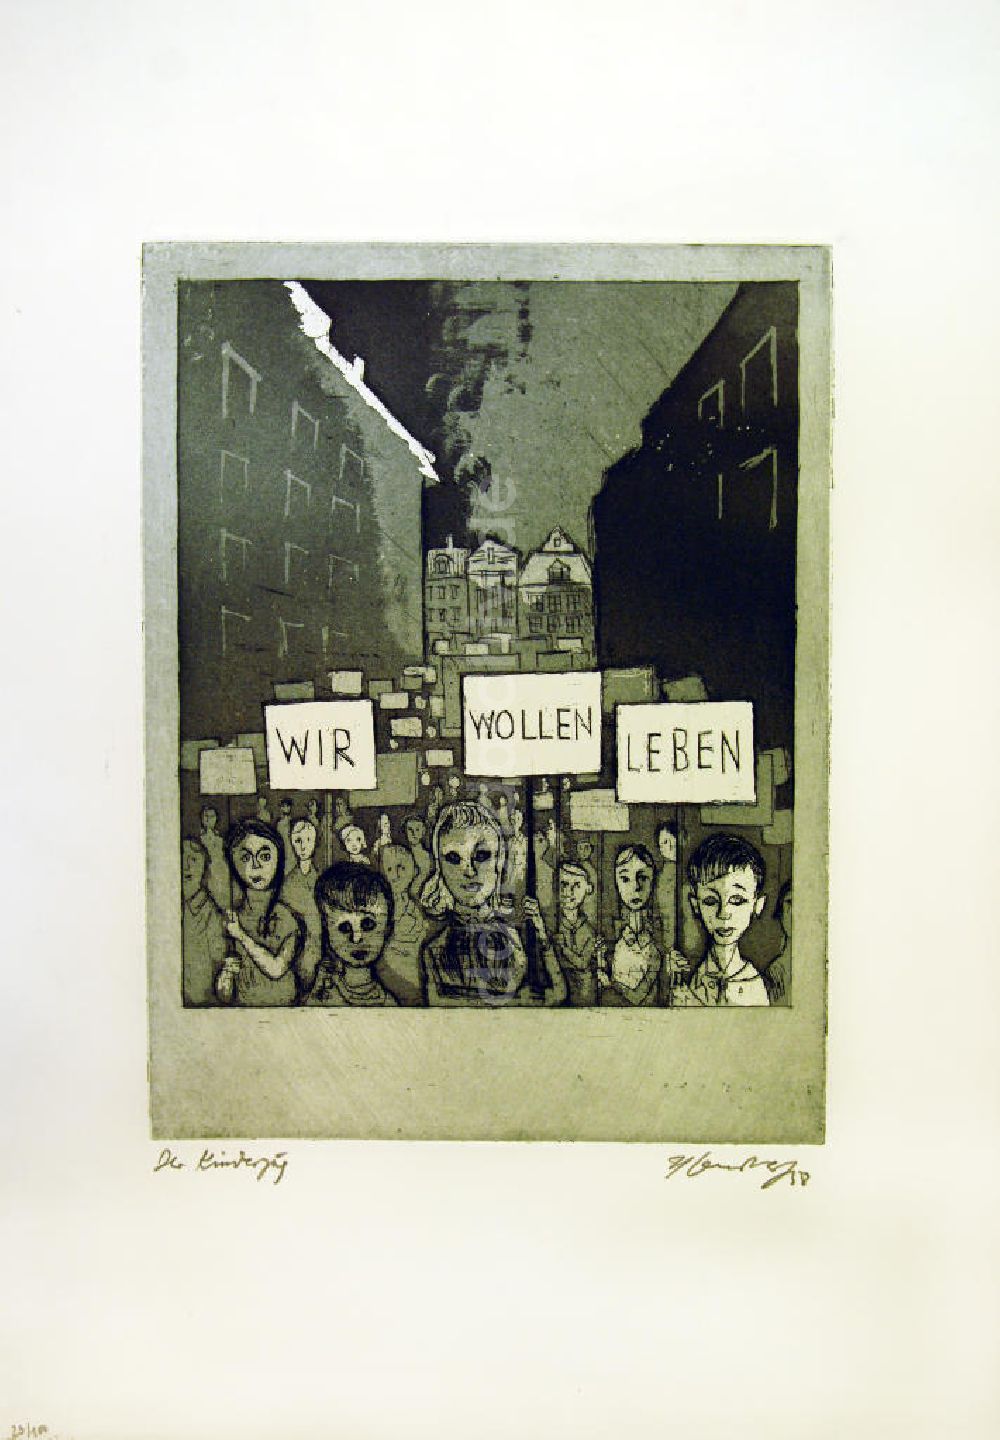 DDR-Fotoarchiv: Berlin - Grafik von Herbert Sandberg 9: Der Kinderzug (wir wollen leben) aus dem Jahr 1958